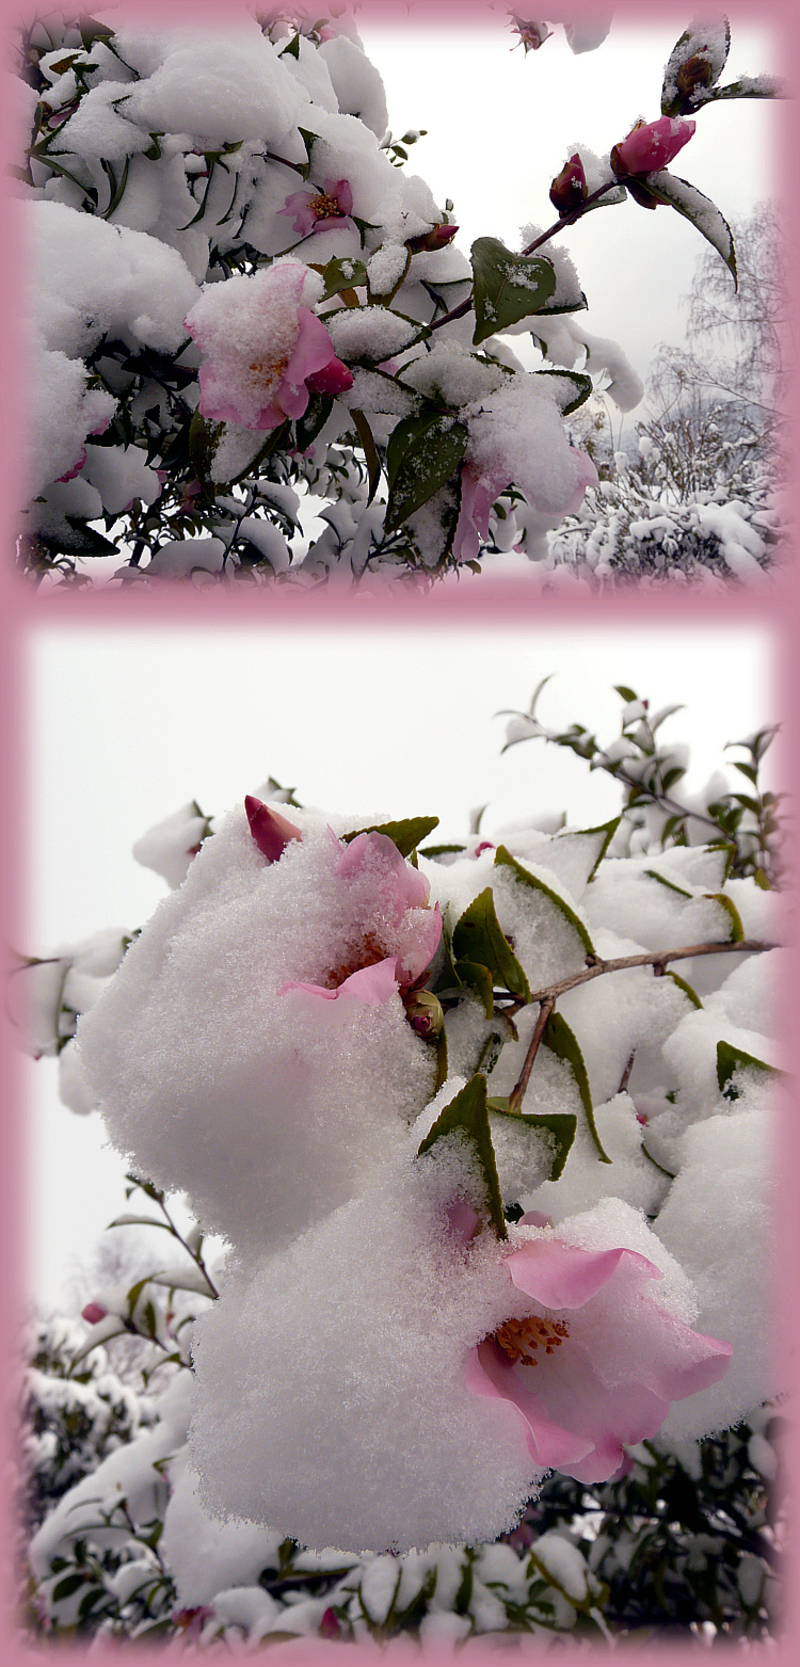 La neige aux camélias - Camélia d'automne (Camelia sasanqua) - Lartigau - Milhas - 31  (Flore)